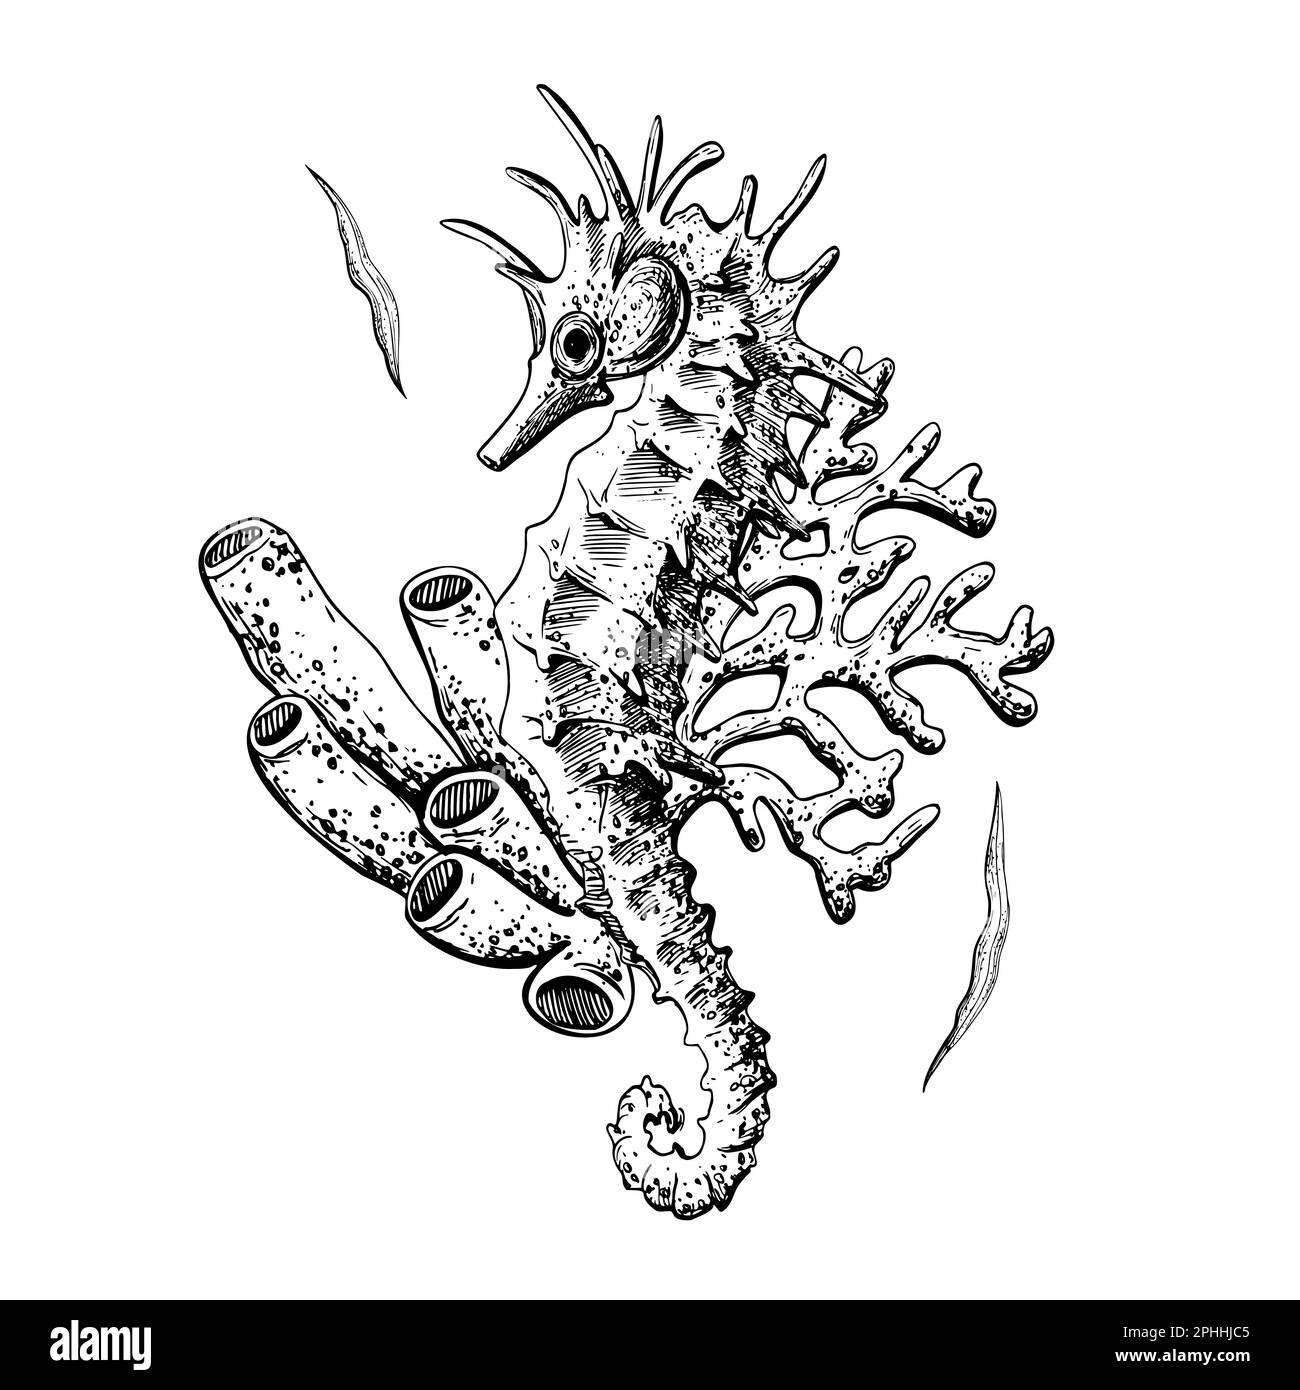 Cavalluccio marino con coralli oggetto isolato su sfondo bianco. Illustrazione vettoriale immagine disegnata a mano. Composizione per poster, biglietti, adesivi, stampe Illustrazione Vettoriale